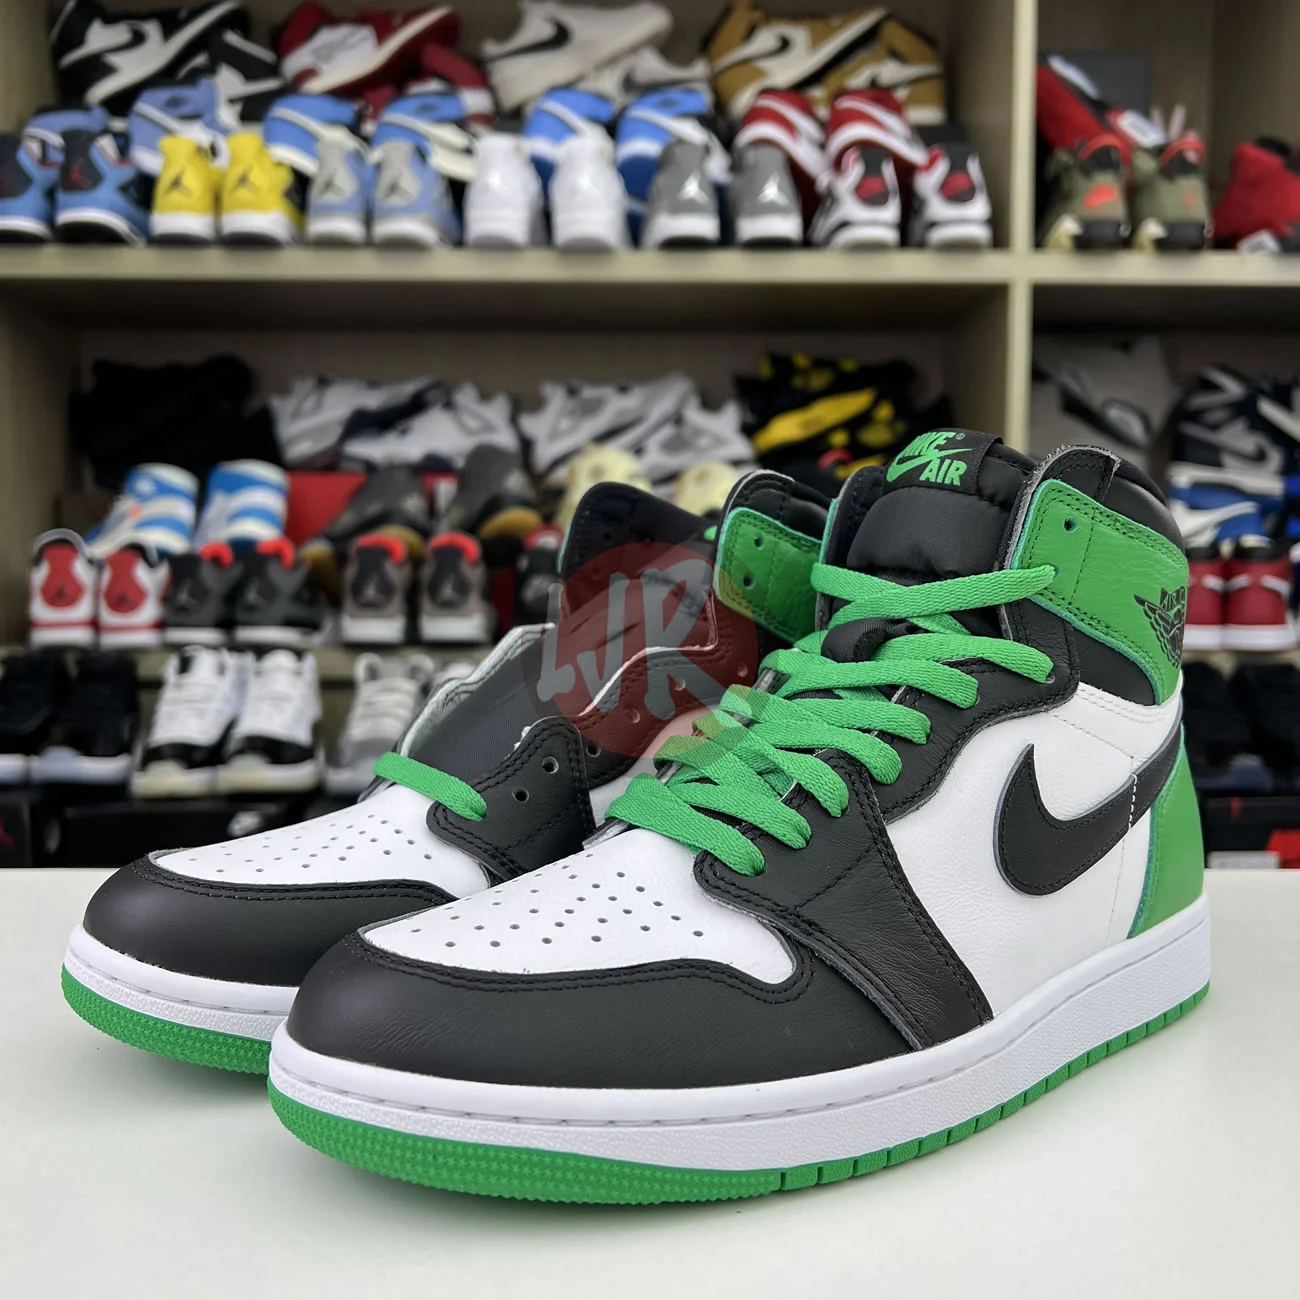 Air Jordan 1 Retro High Og Lucky Green Dz5485 031 Ljr Sneakers (9) - bc-ljr.net